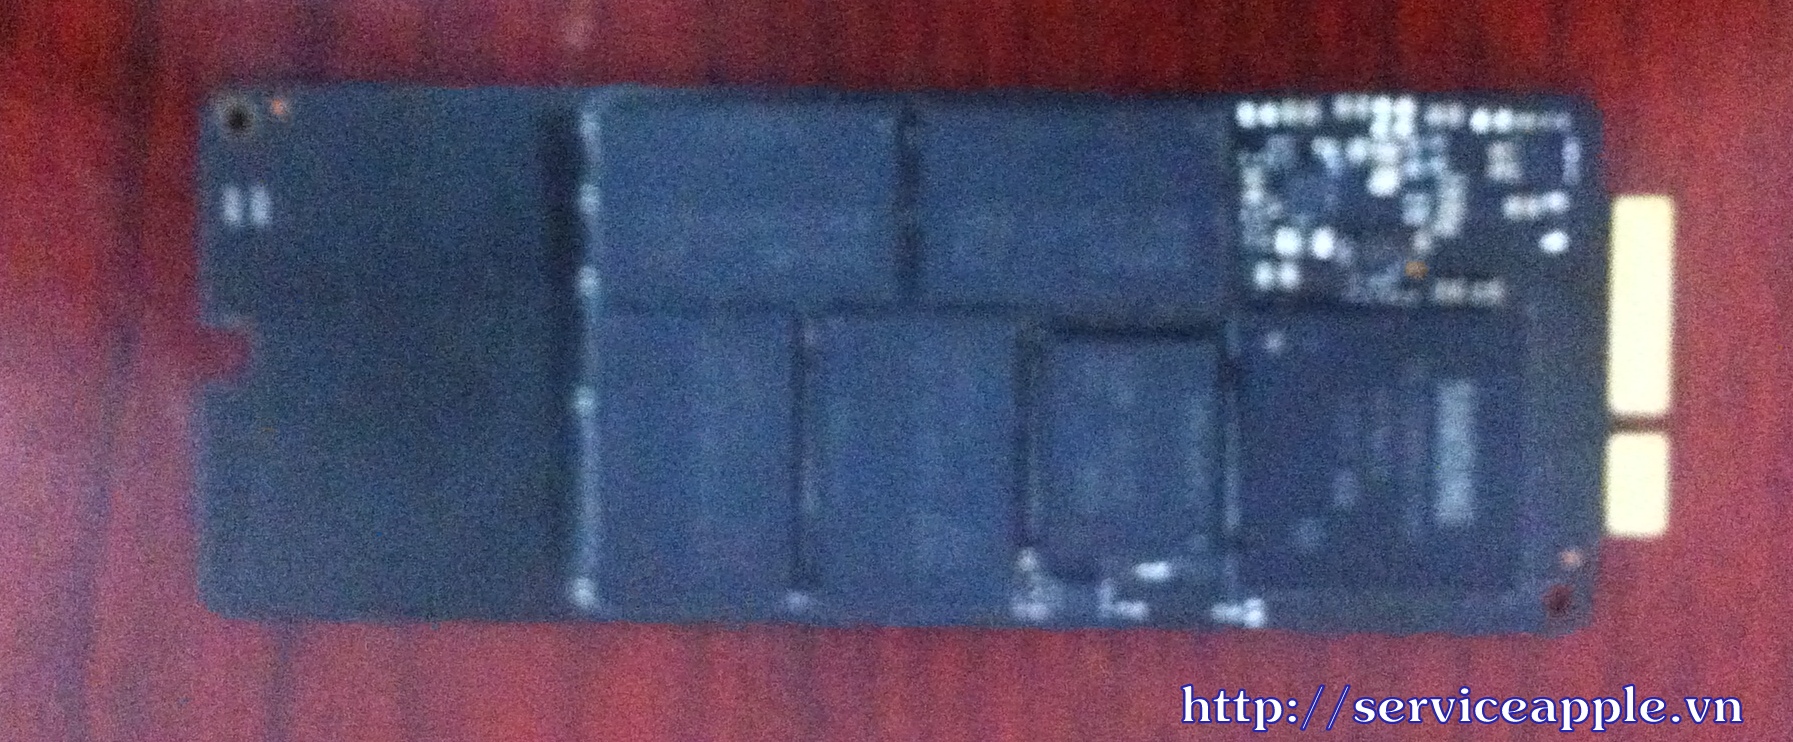 Ổ cứng SSD Samsung 256GB Macbook Pro retina 15